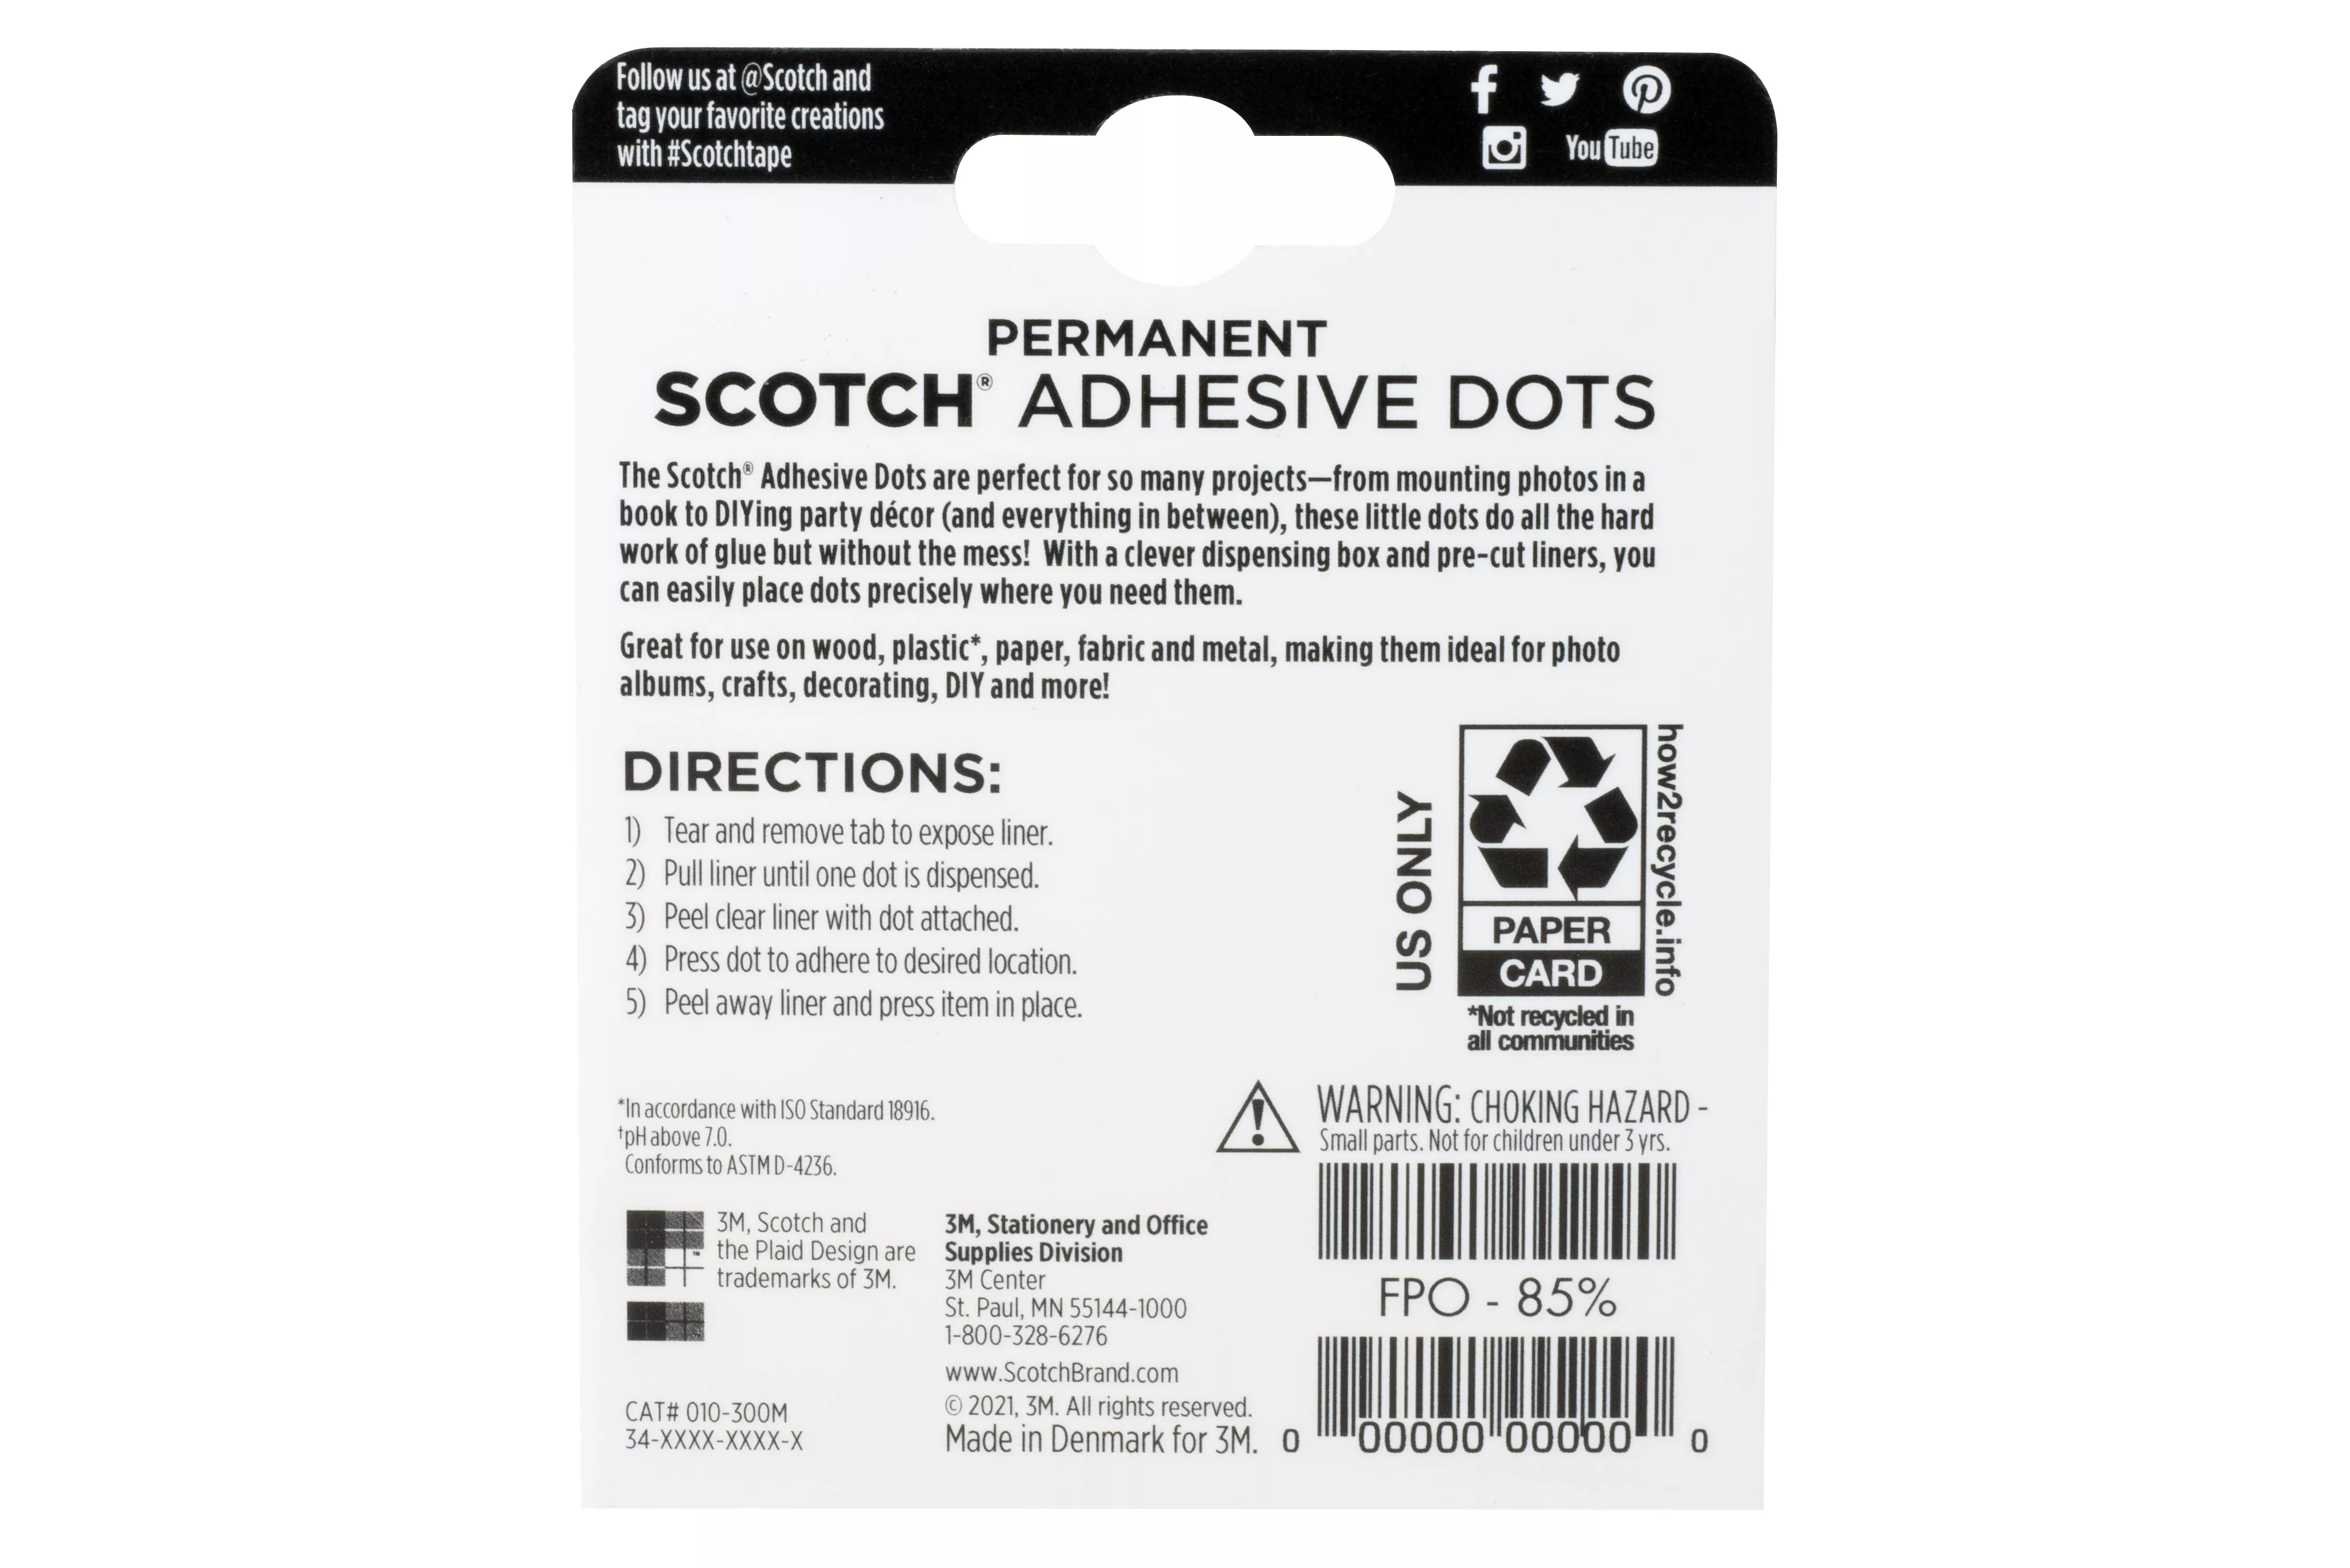 SKU 7100114767 | Scotch® Adhesive Dots 010-300M